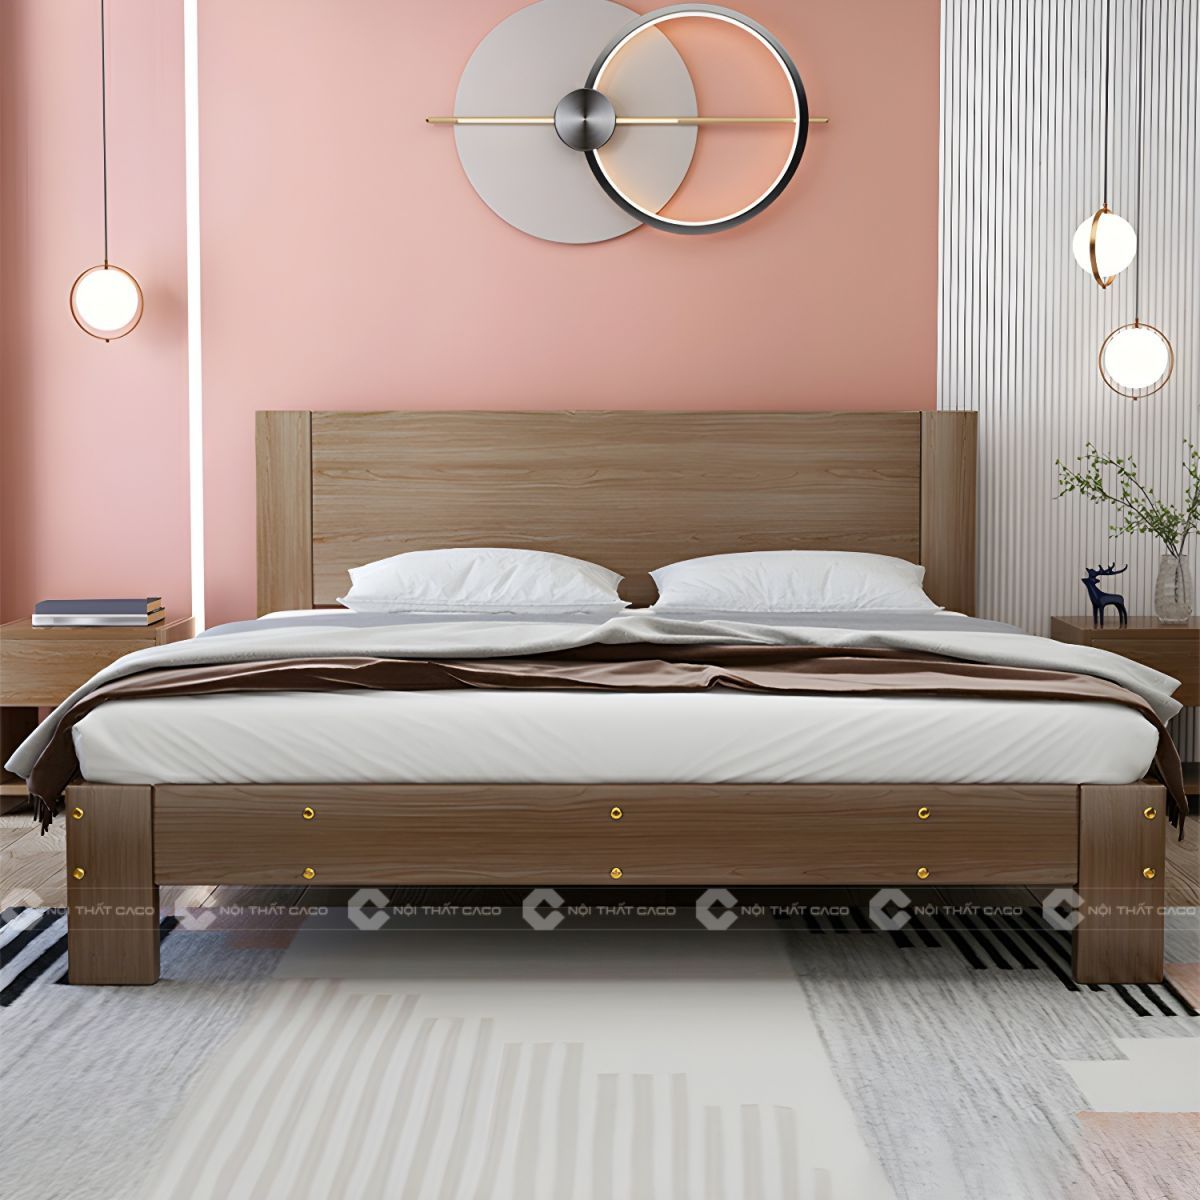 Giường ngủ gỗ tự nhiên màu nâu vân gỗ